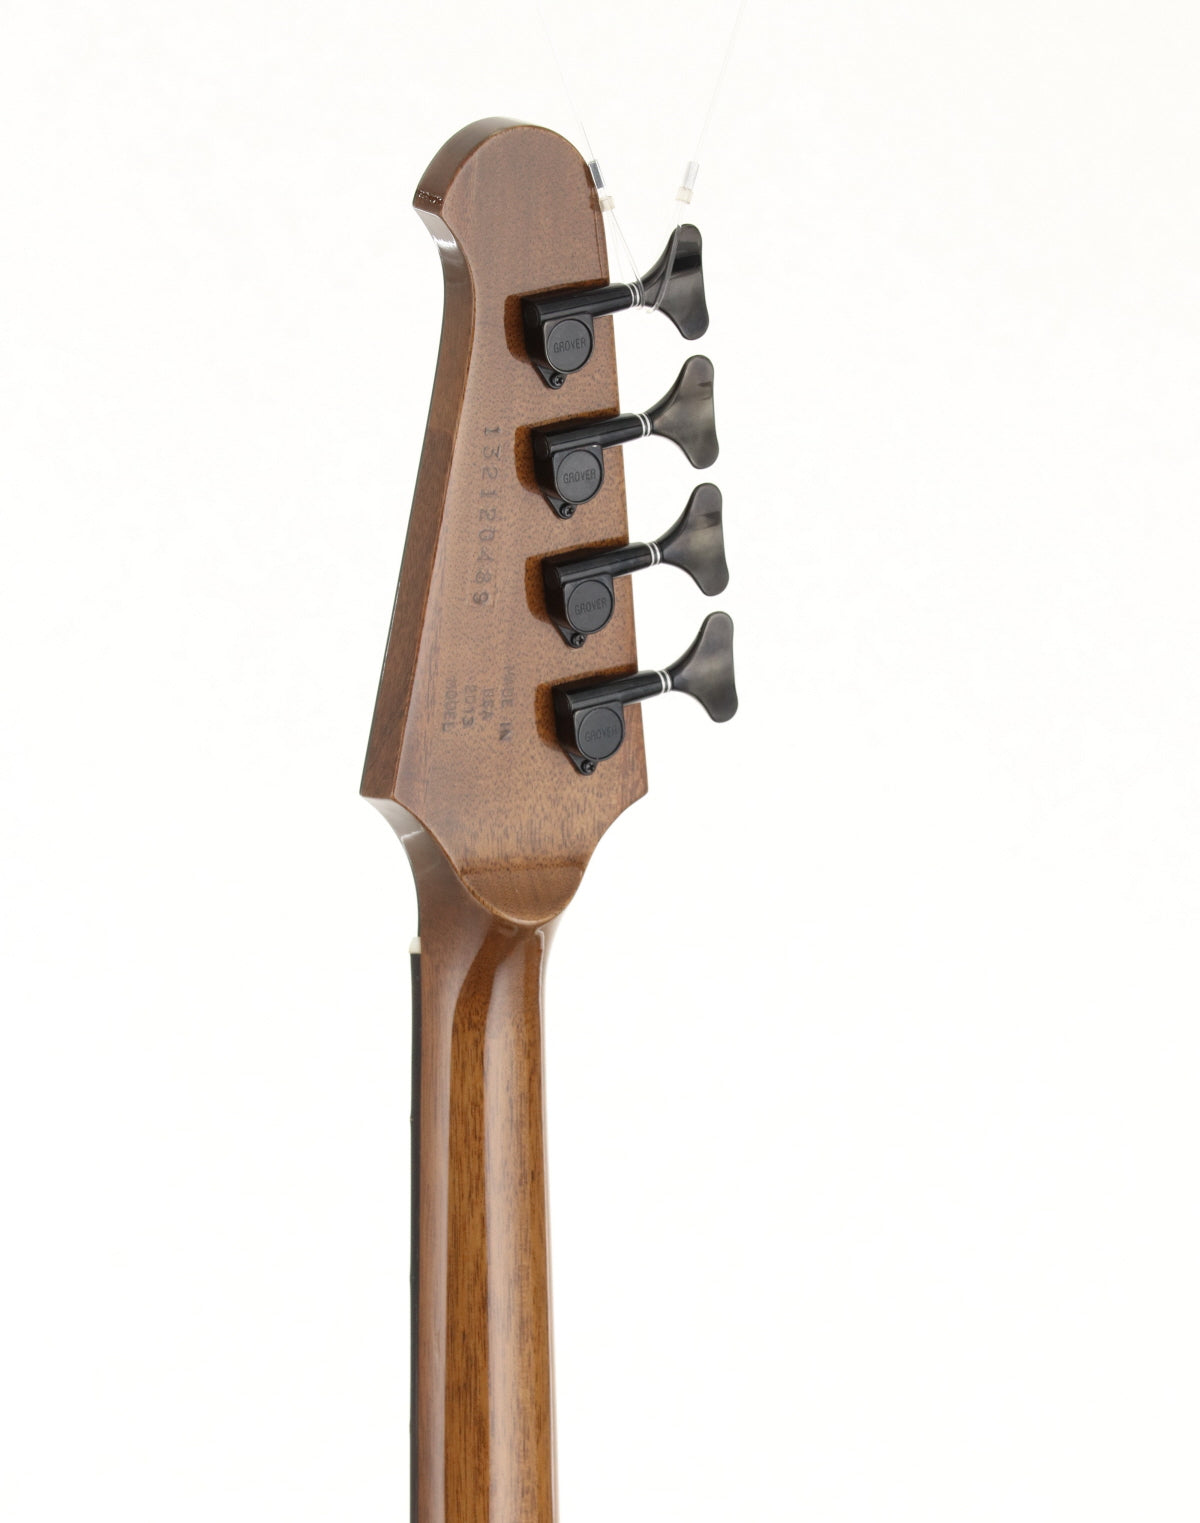 [SN 132120489] USED Gibson / Thunderbird Bass Non Reverse Sunburst 2012 [09]